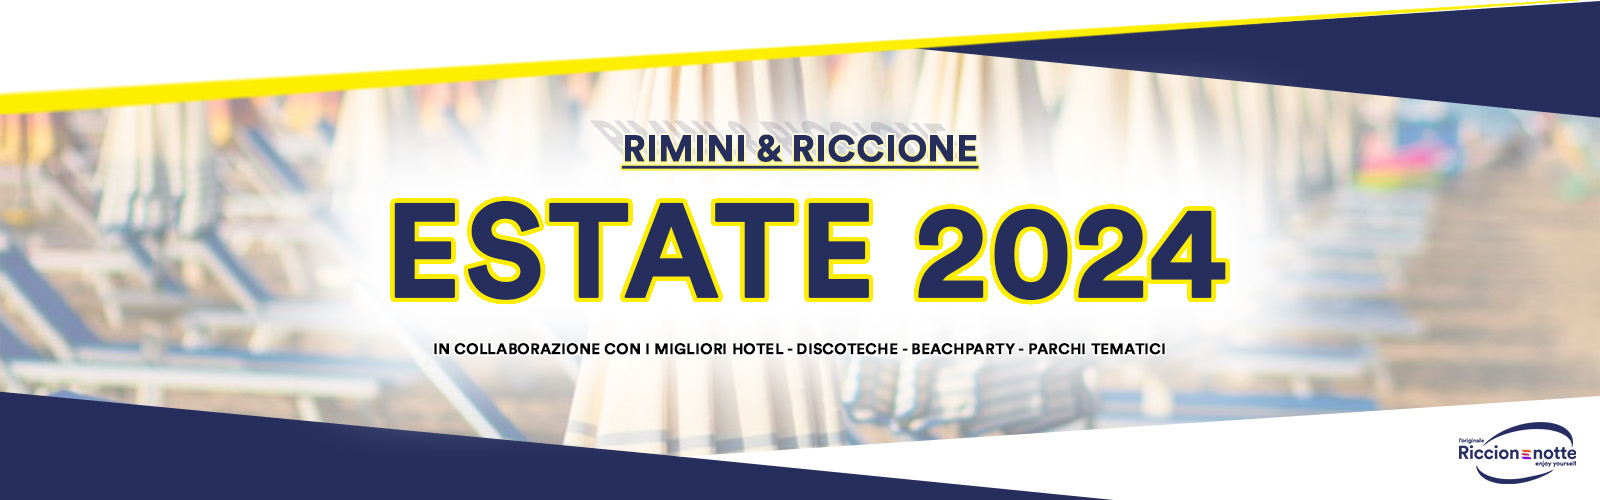 Estate-Riccione-Rimini-2024